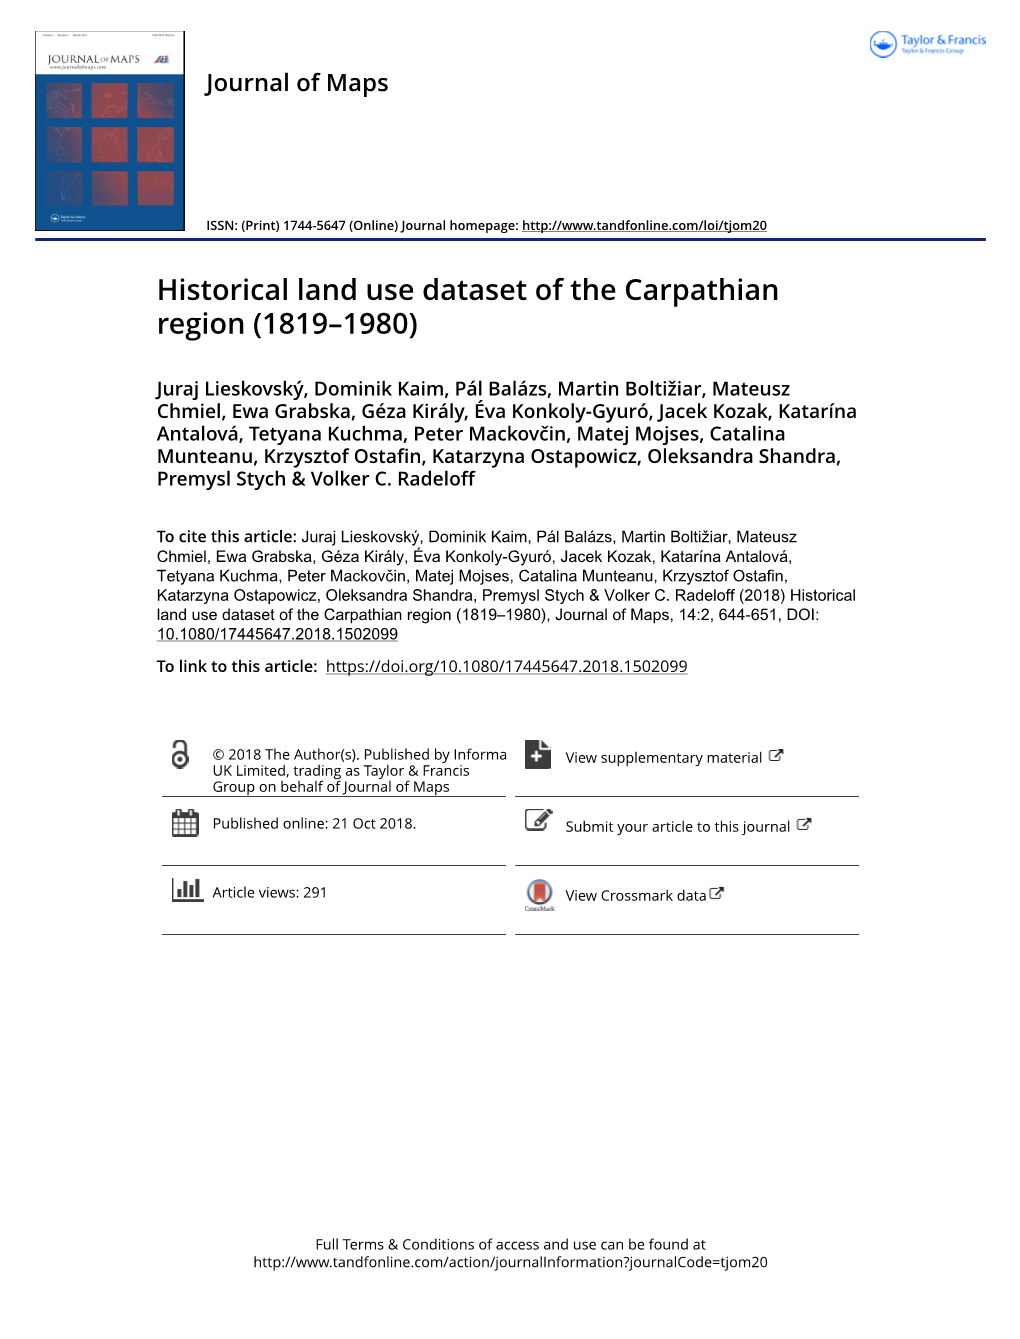 Historical Land Use Dataset of the Carpathian Region (1819–1980)